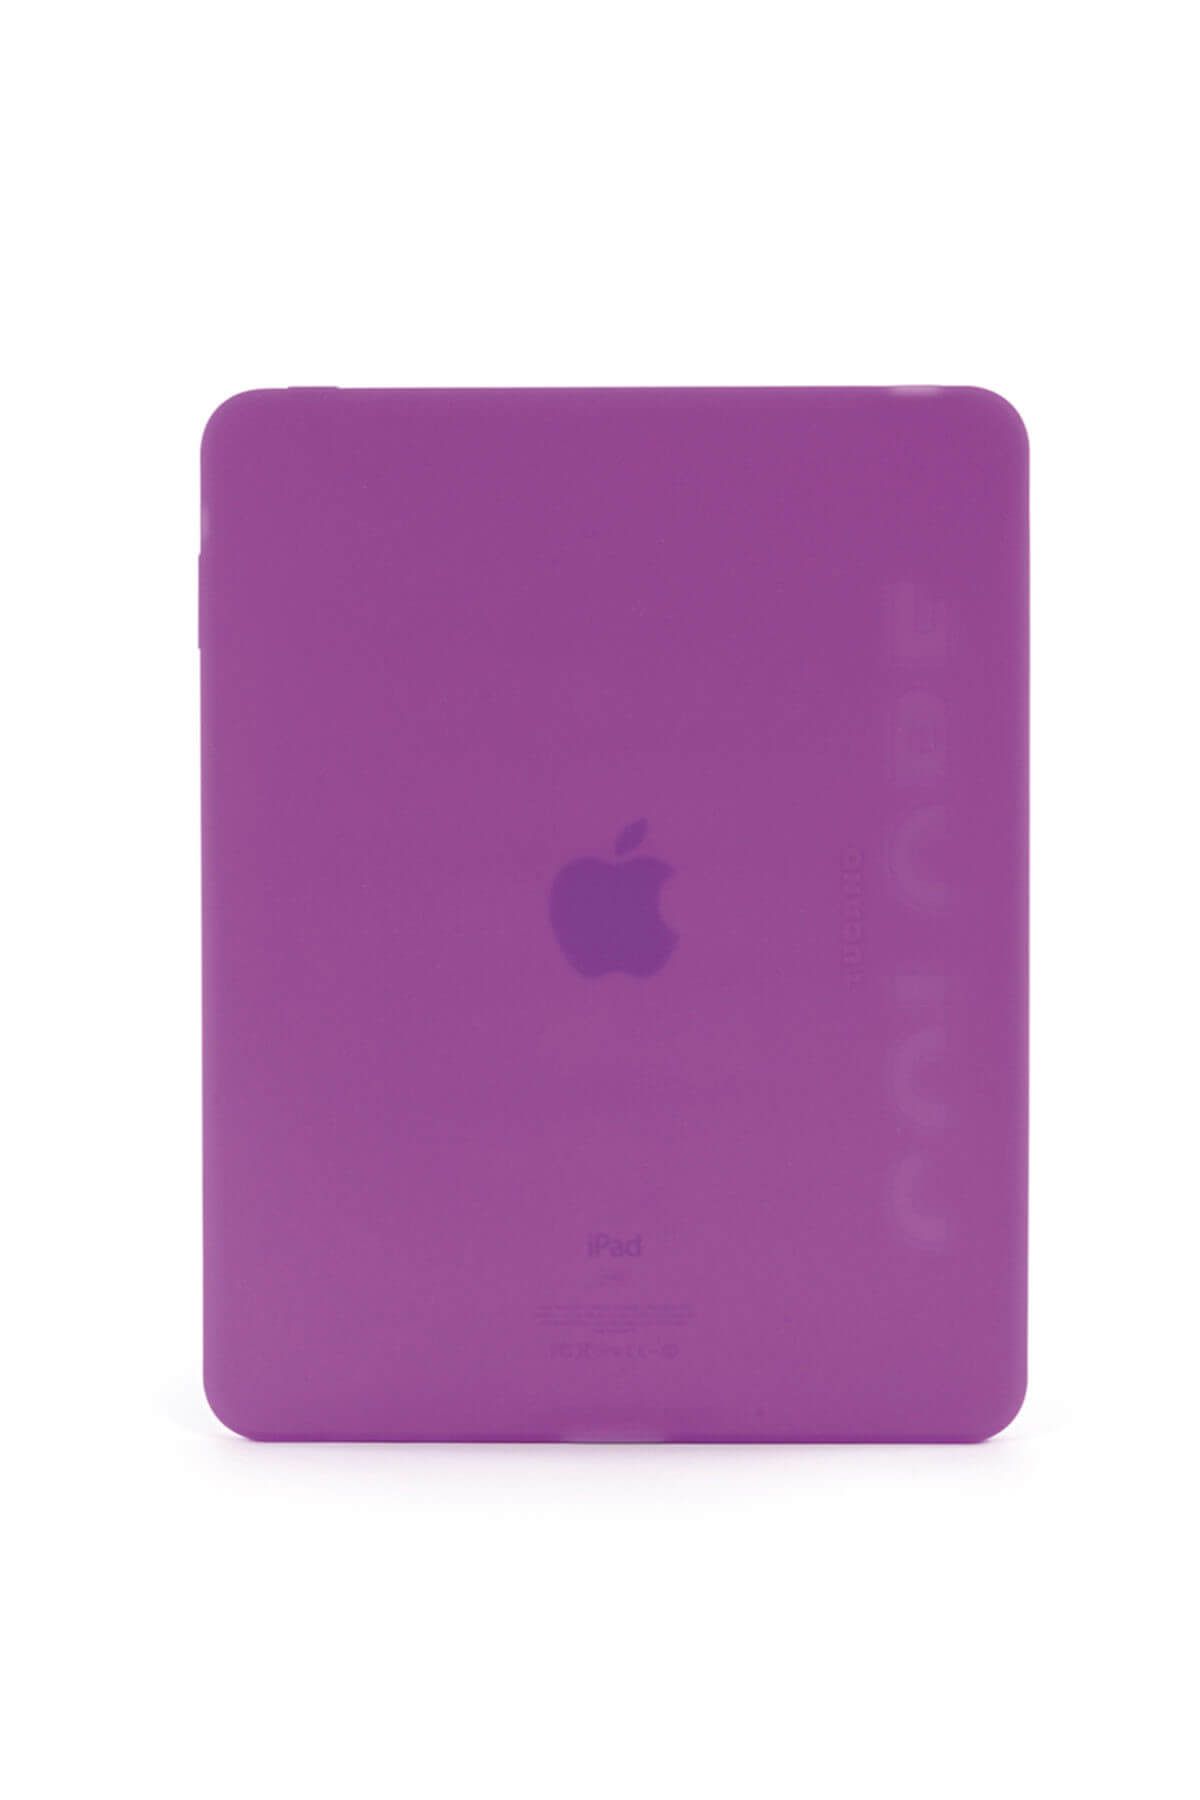 Tucano IPDCS-PP Colore iPad 1 ile Uyumlu Silikon Tablet Kılıfı Mor